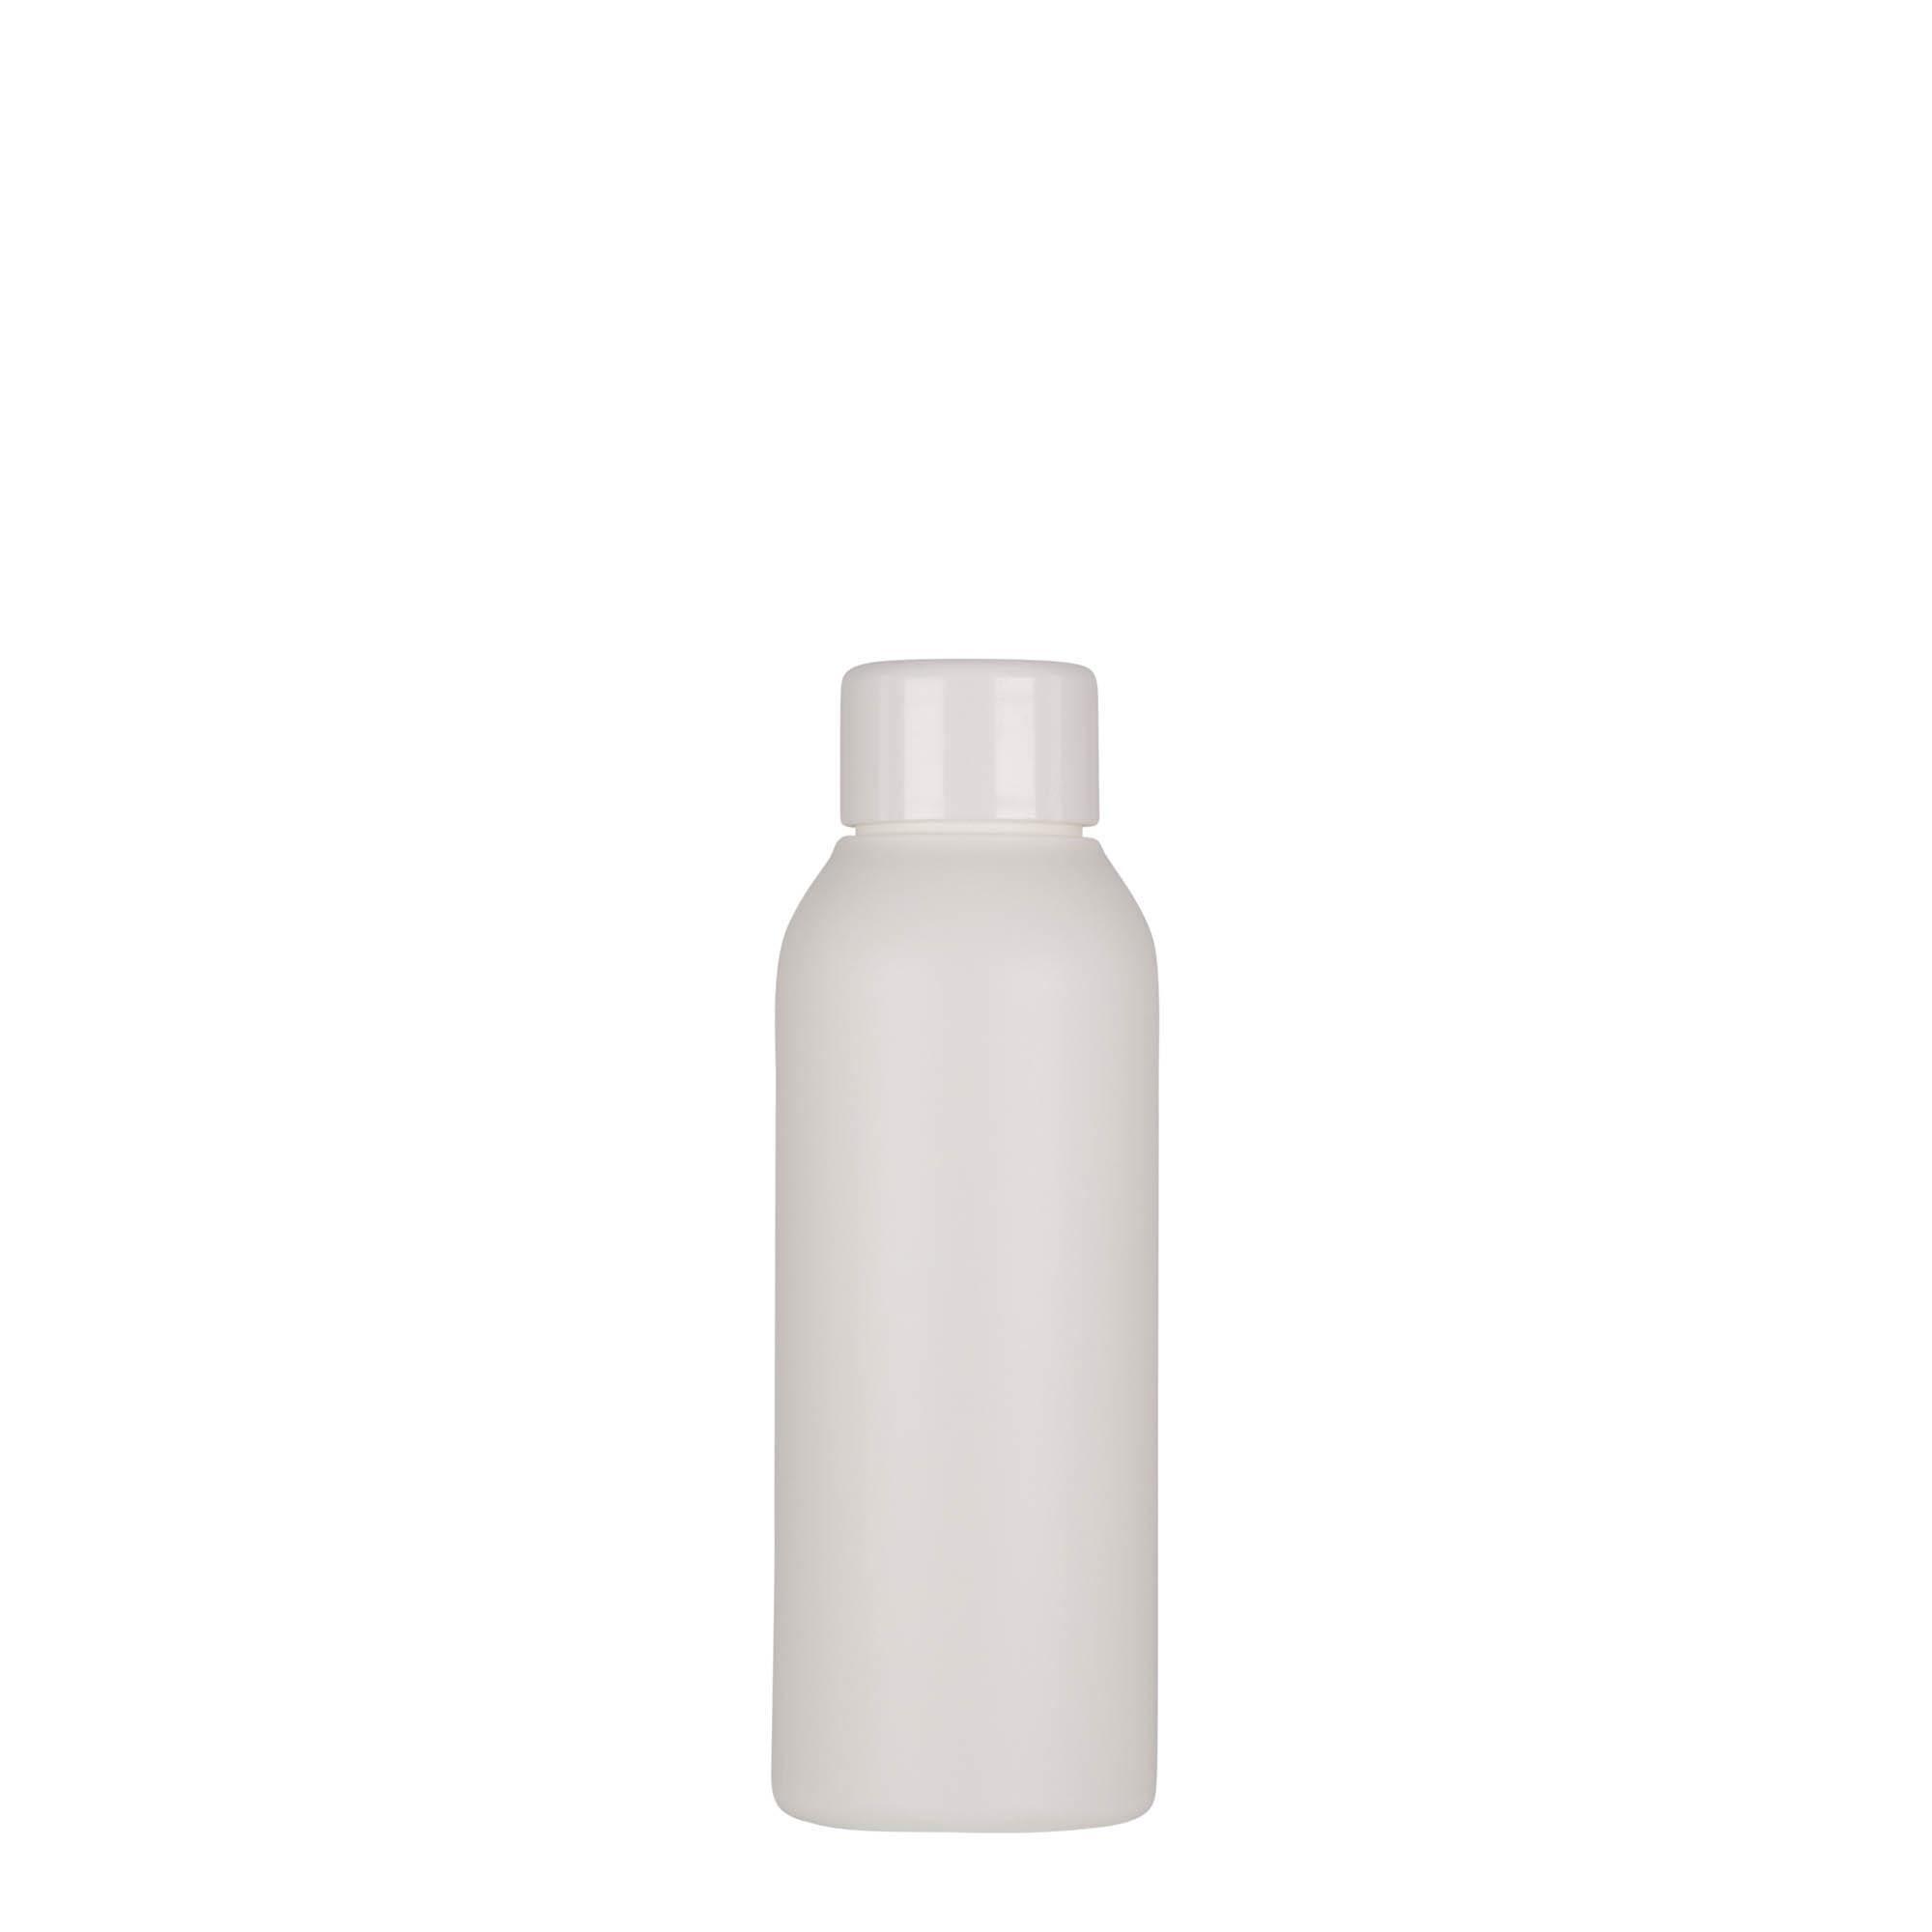 100 ml plastic bottle 'Tuffy', HDPE, white, closure: GPI 24/410